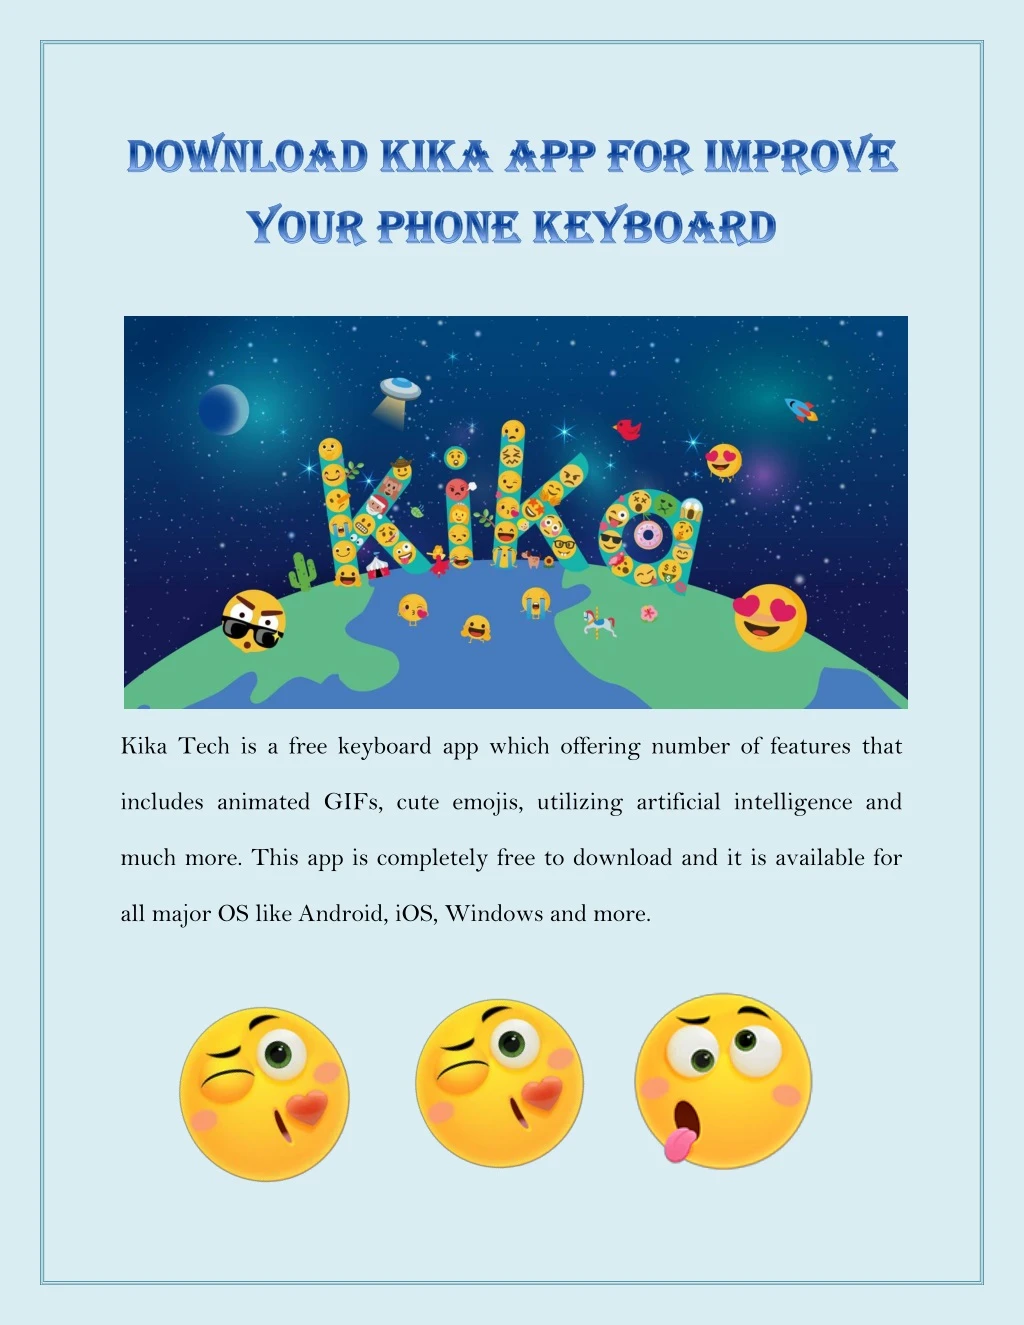 kika tech is a free keyboard app which offering